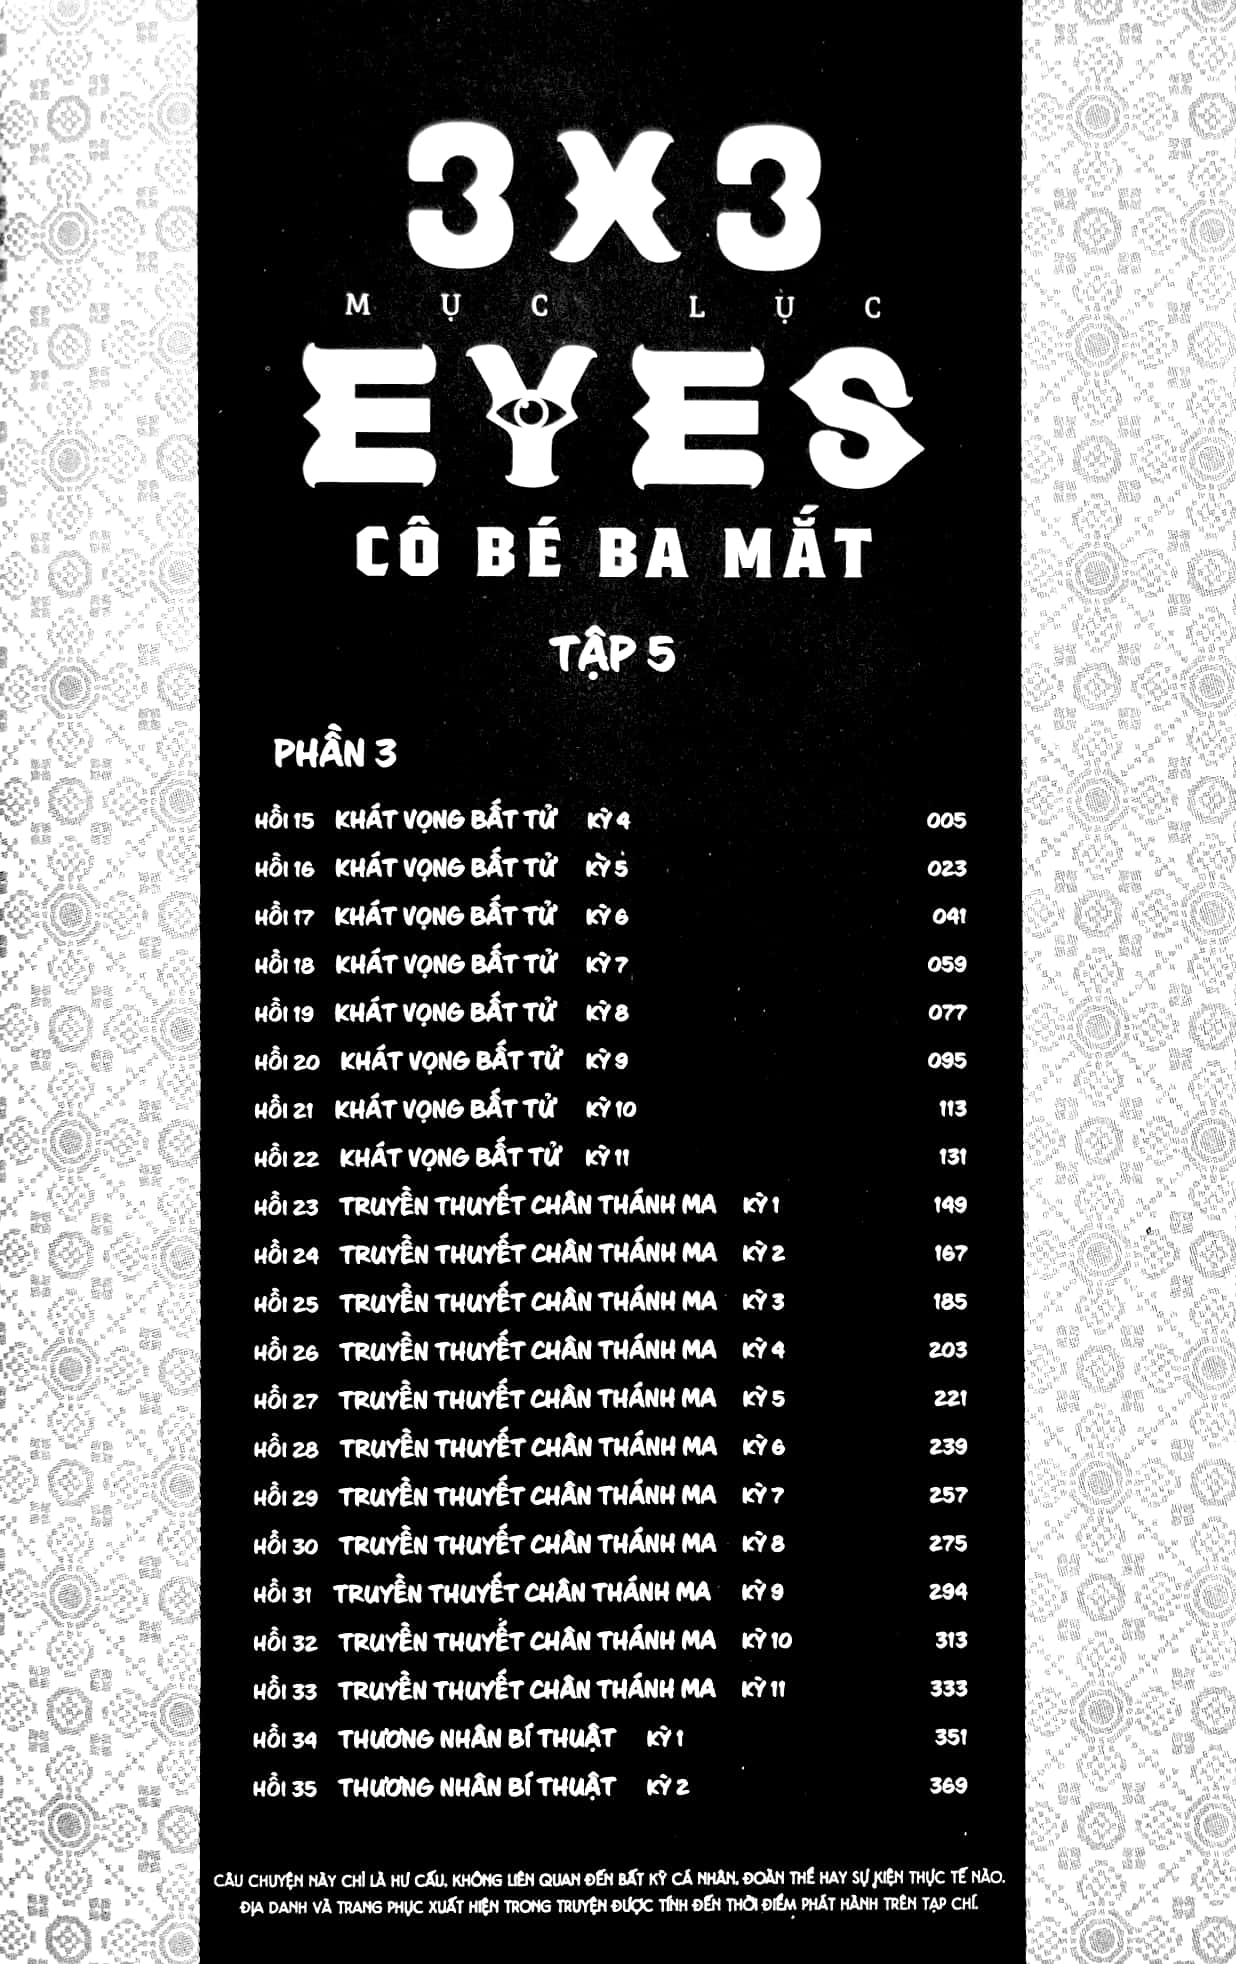 3x3 Eyes - Cô Bé Ba Mắt - Tập 5 - Tặng Kèm Card Giấy - Trẻ